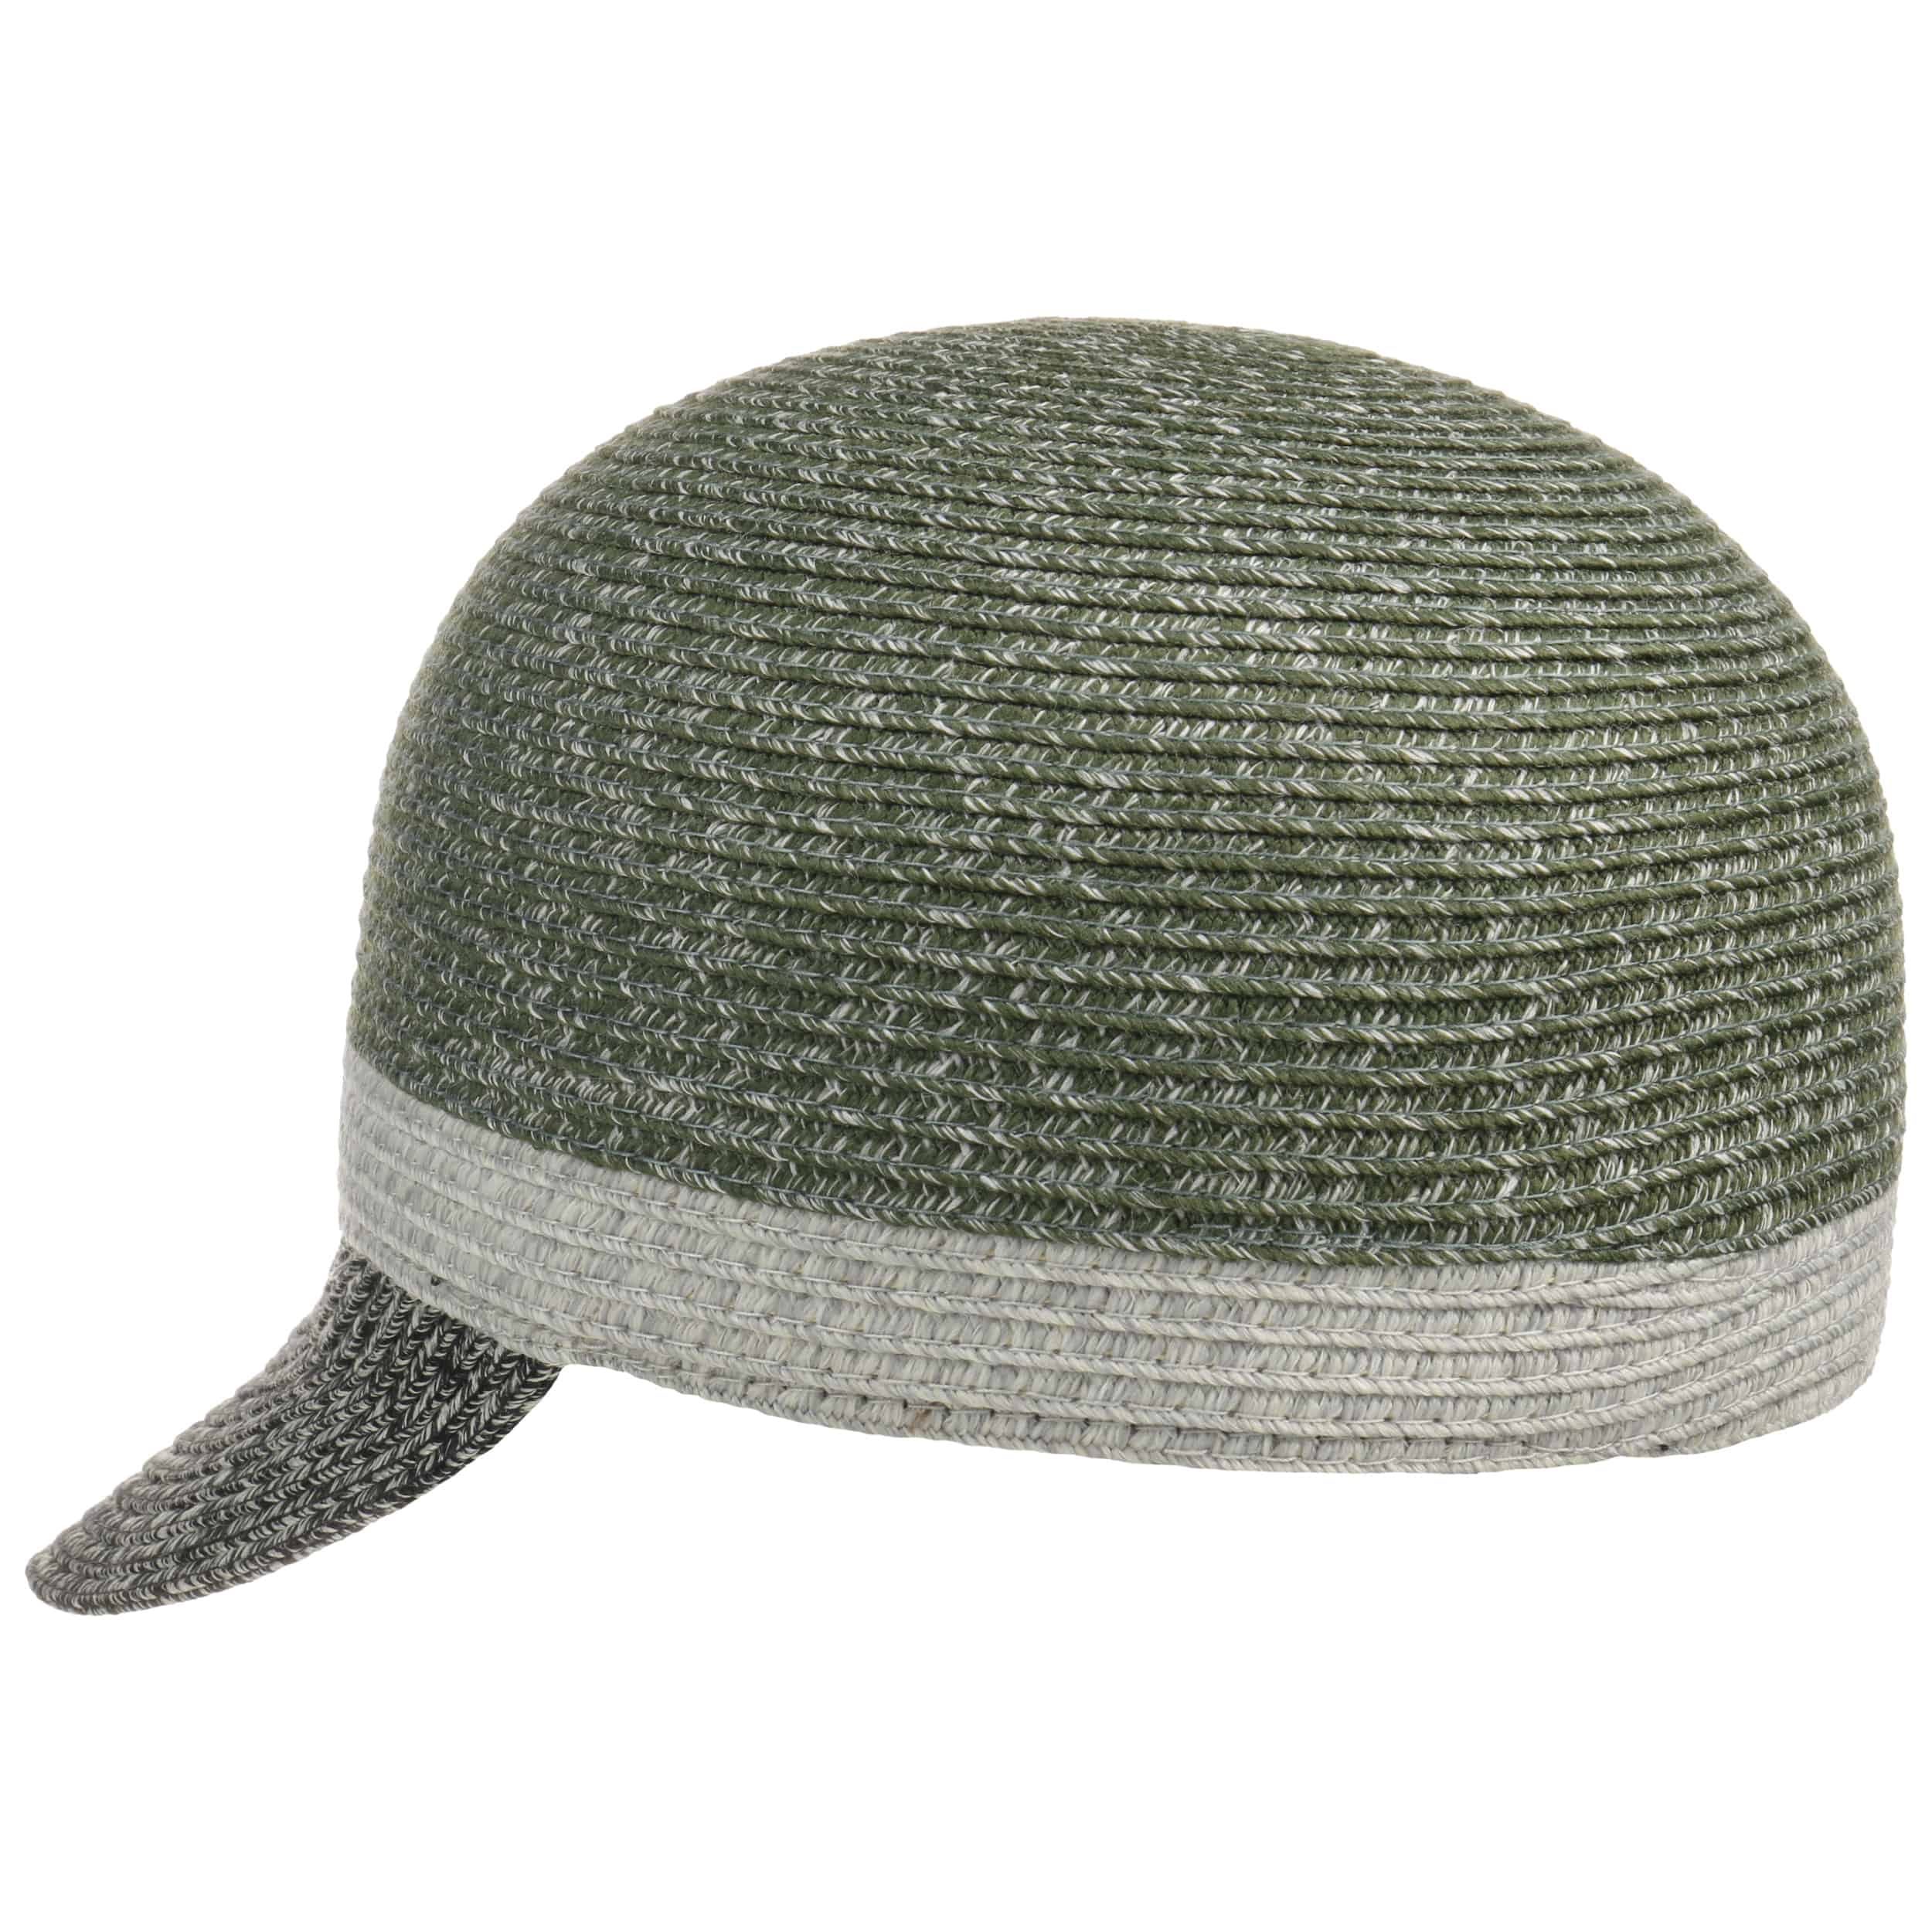 Seeberger Sombrero de Laponia gris claro-marr\u00f3n look casual Accesorios Gorras Sombreros de Laponia 